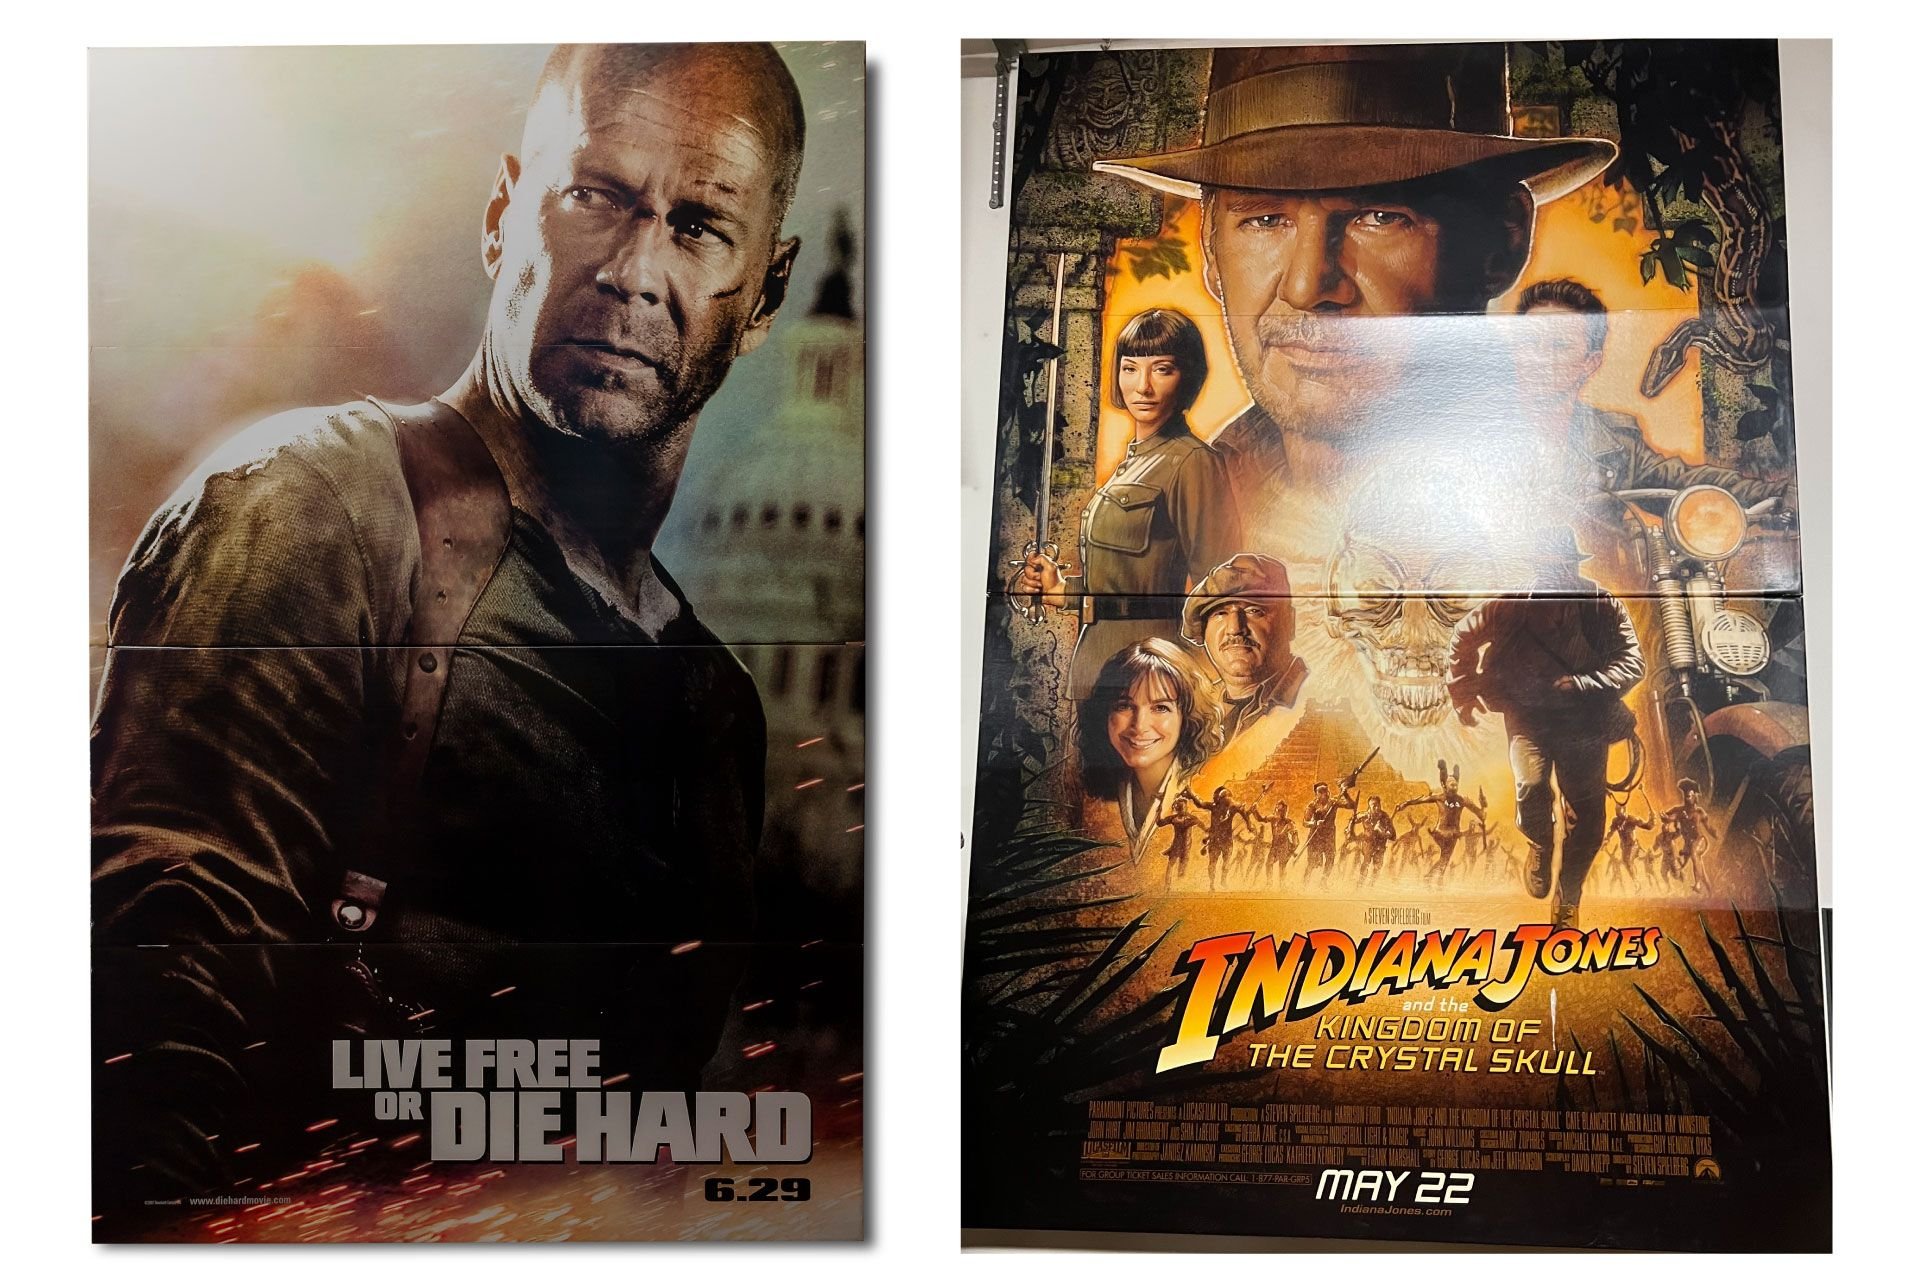 For Sale Pair of Large Cardboard Movie Theatre Displays (1) Live Free or Die Hard (2) Indiana Jones